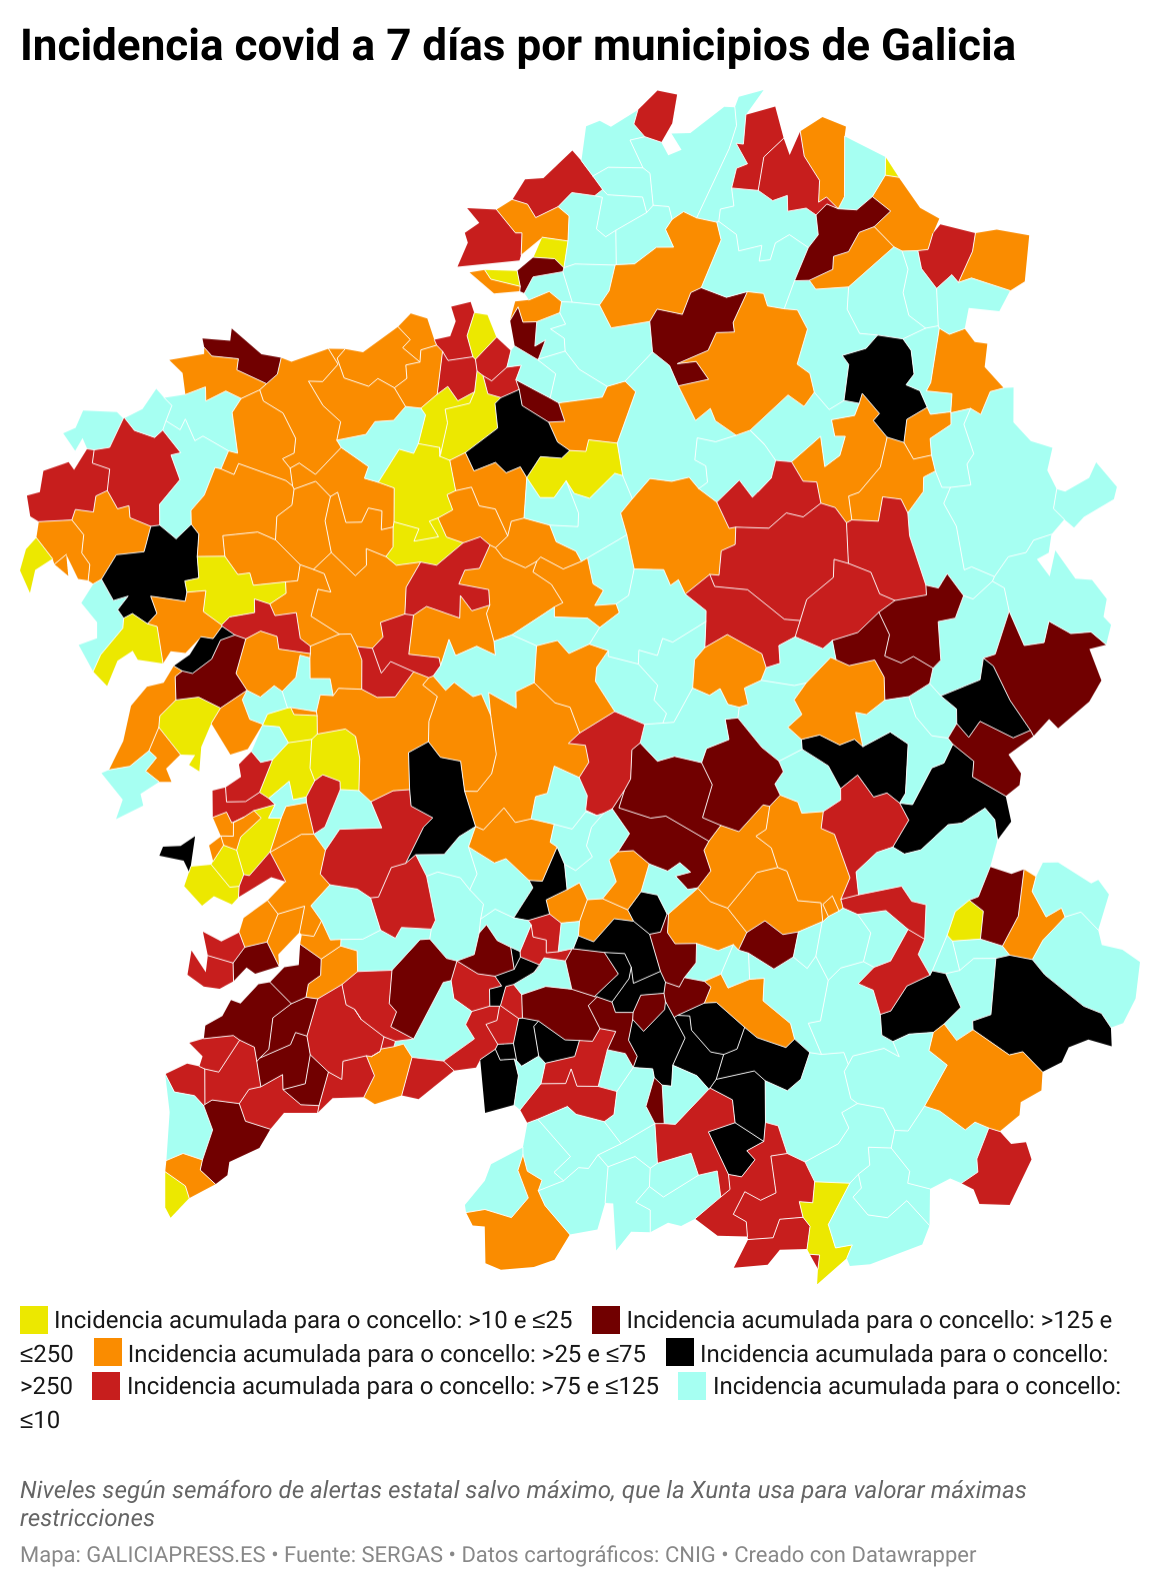 ClElv incidencia covid a 7 d as por municipios de galicia  (7)